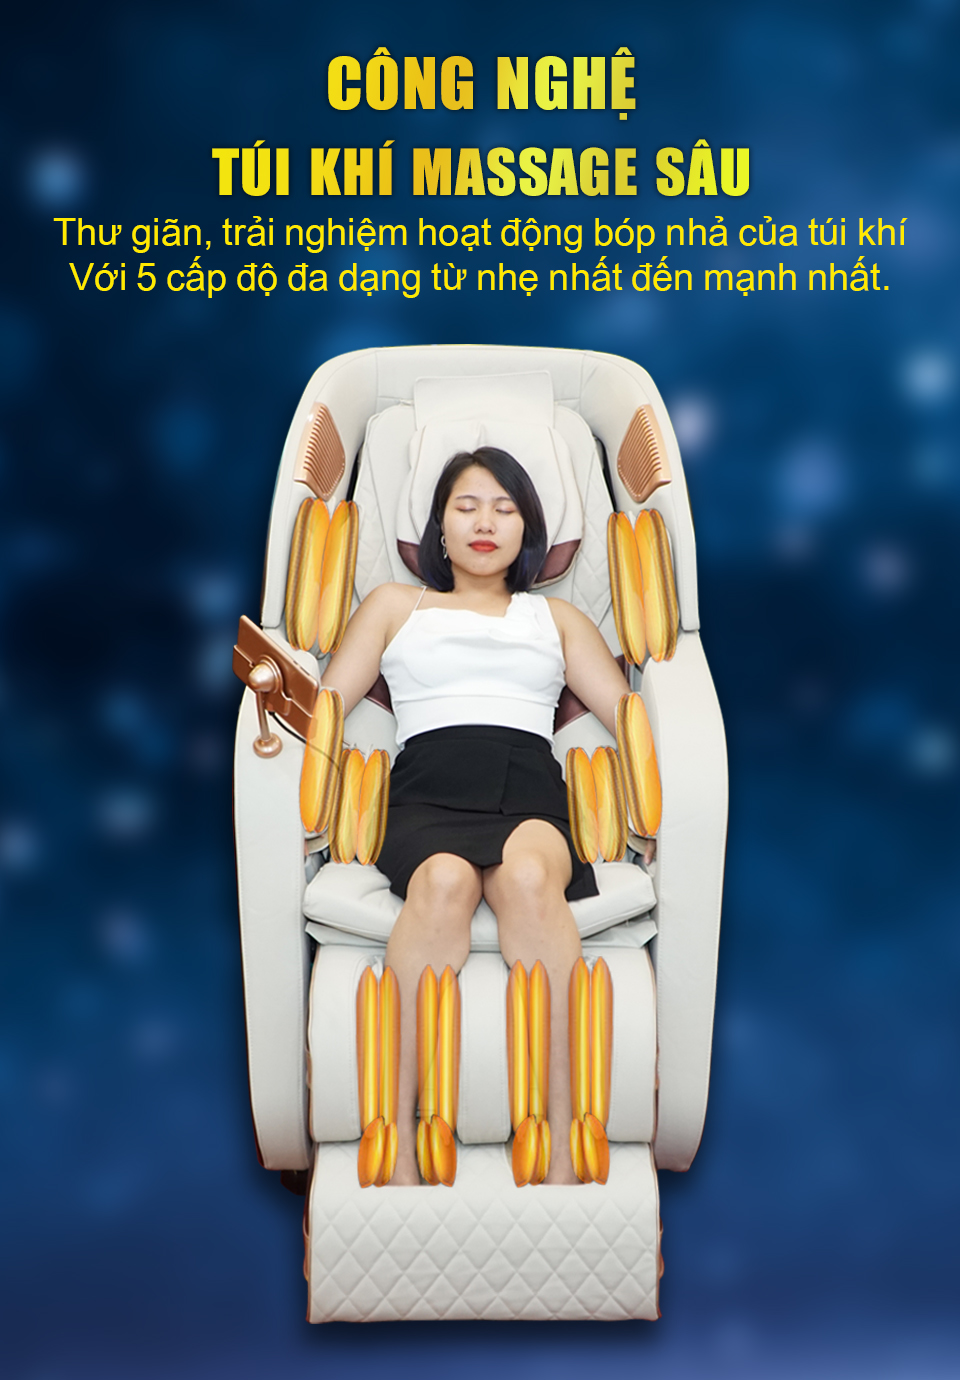 Hệ thống túi khí kép làm nên thương hiệu của ghế massage Haruko cũng được tích hợp trong sản phẩm